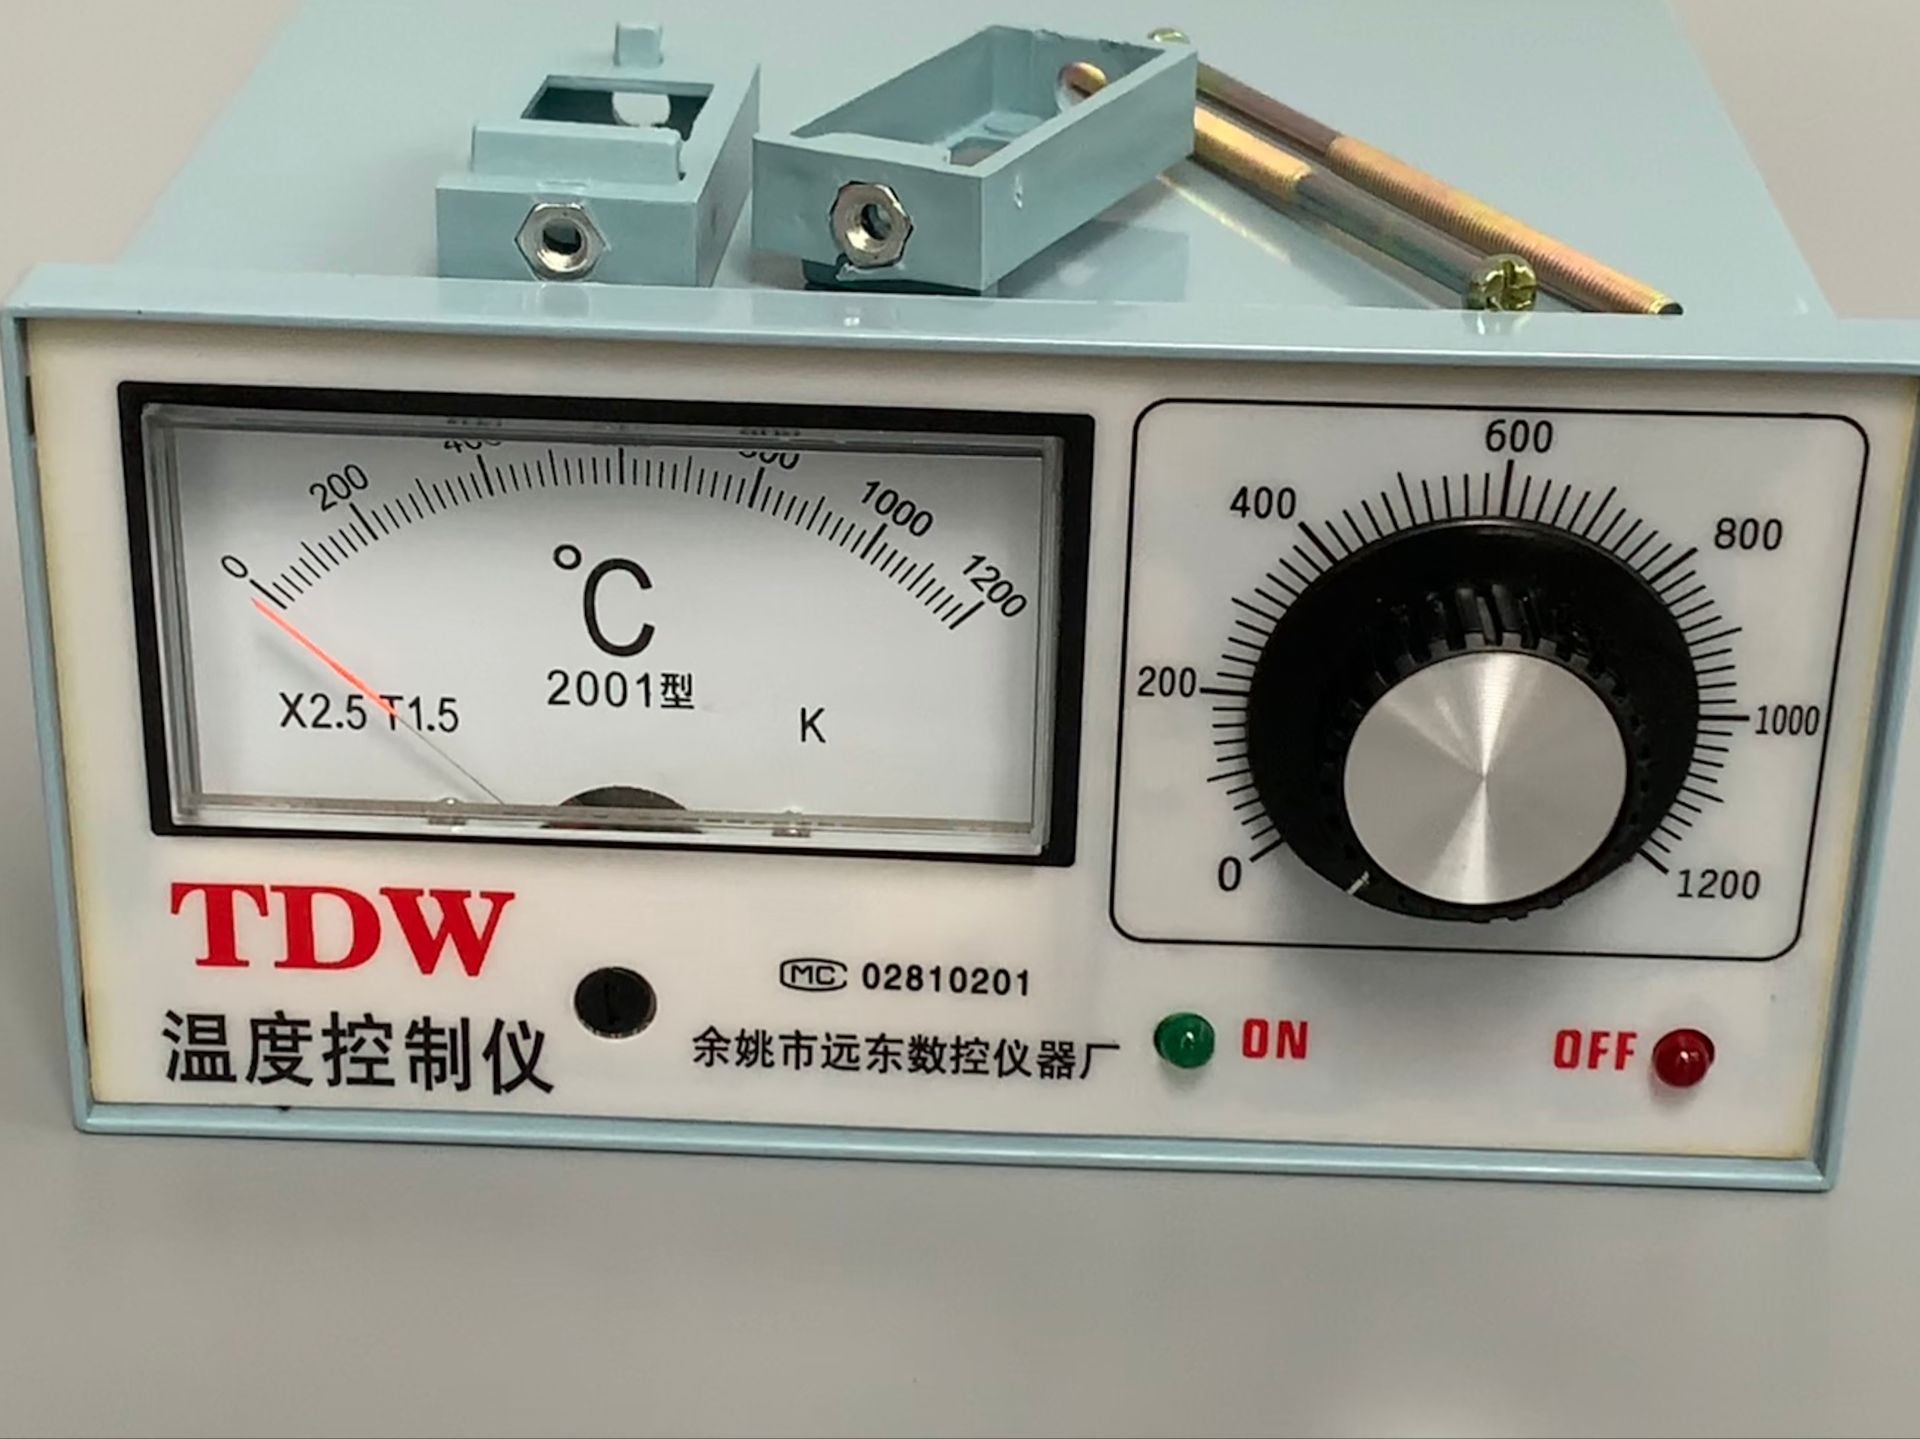 余姚市上通温控仪表厂TDW温度控制仪2001型1200度箱式电阻炉 仪表